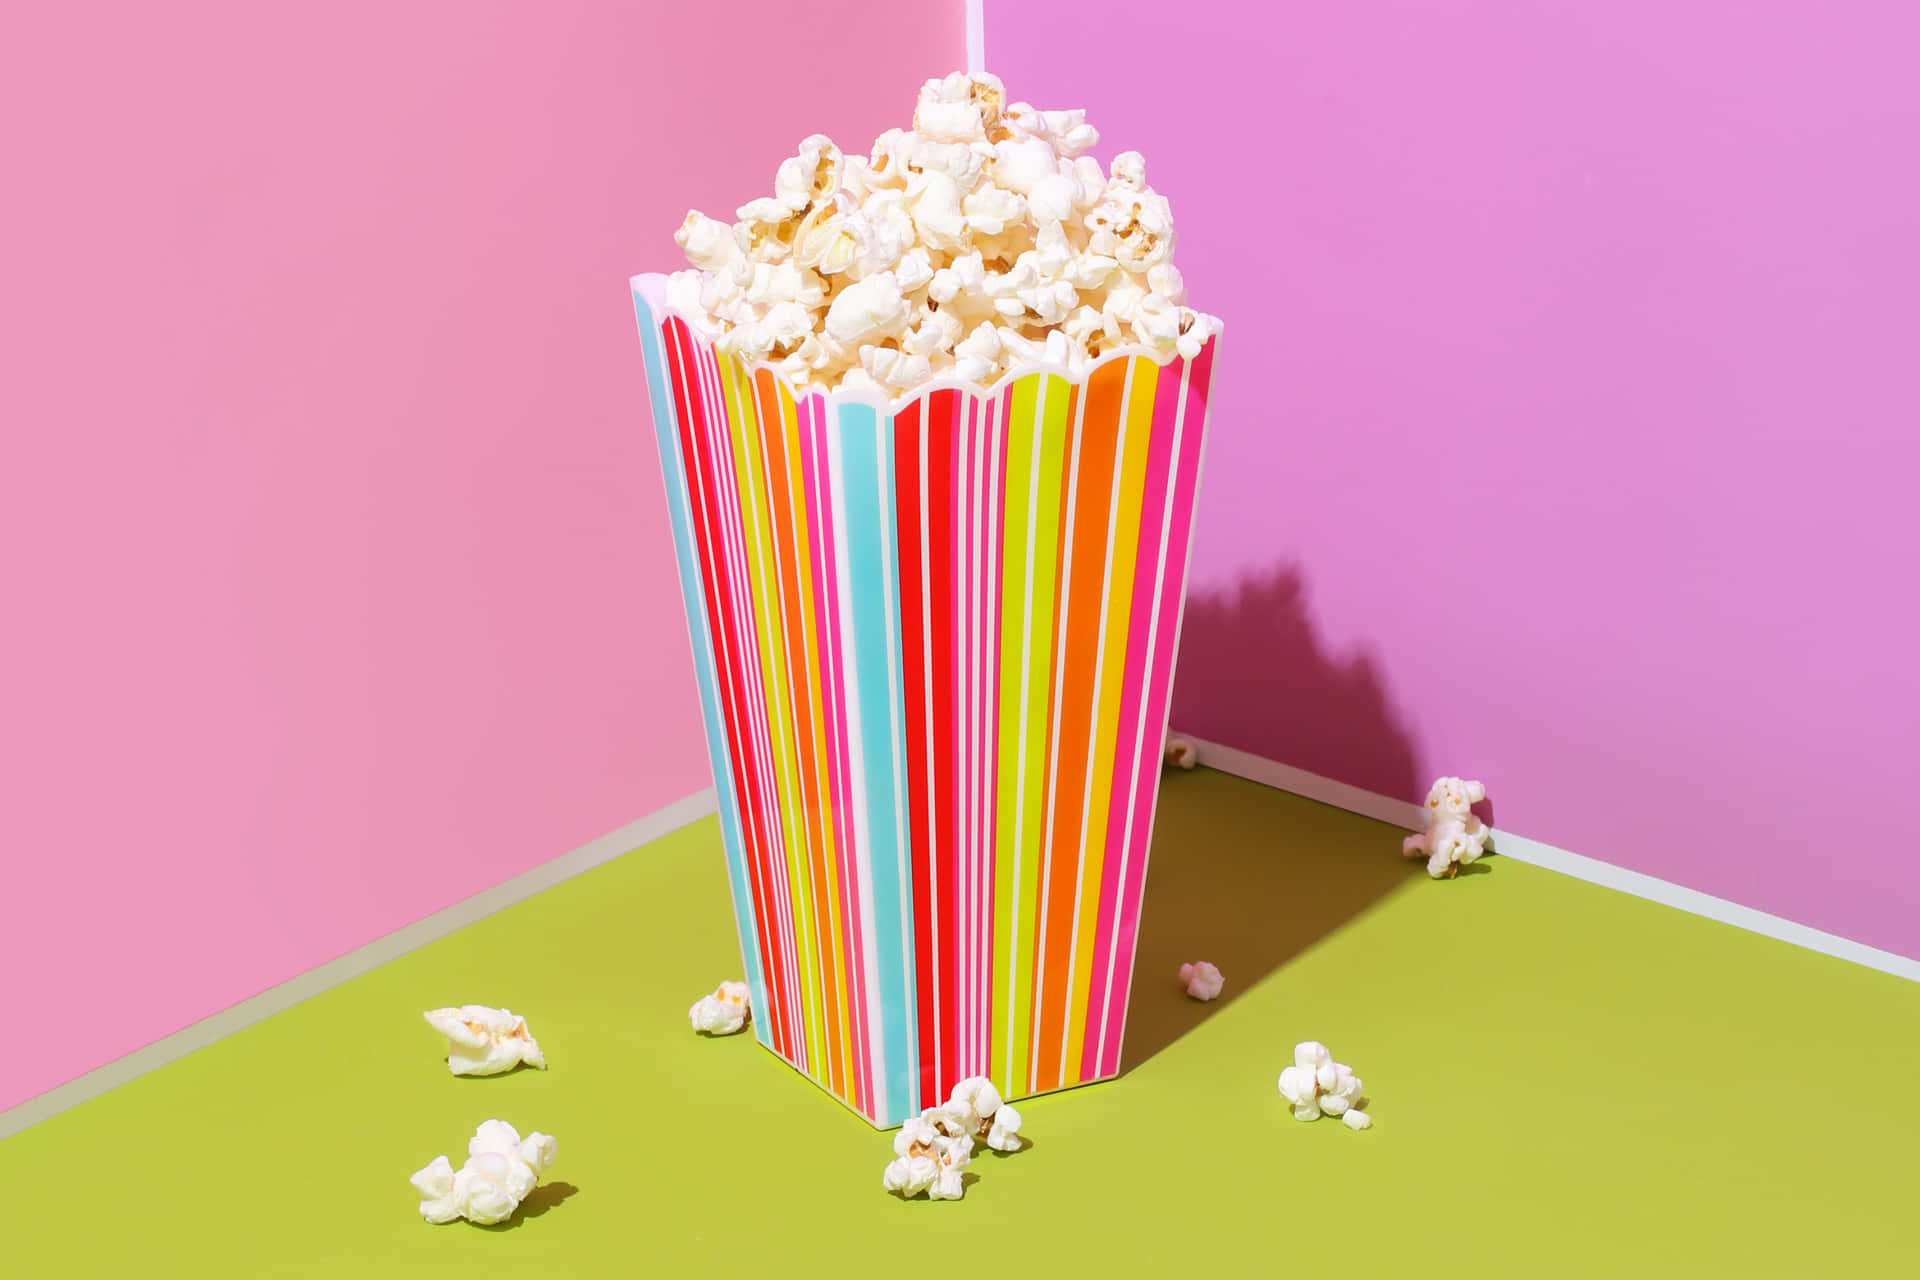 Goditiuna Serata Cinematografica Con Deliziosi Popcorn.